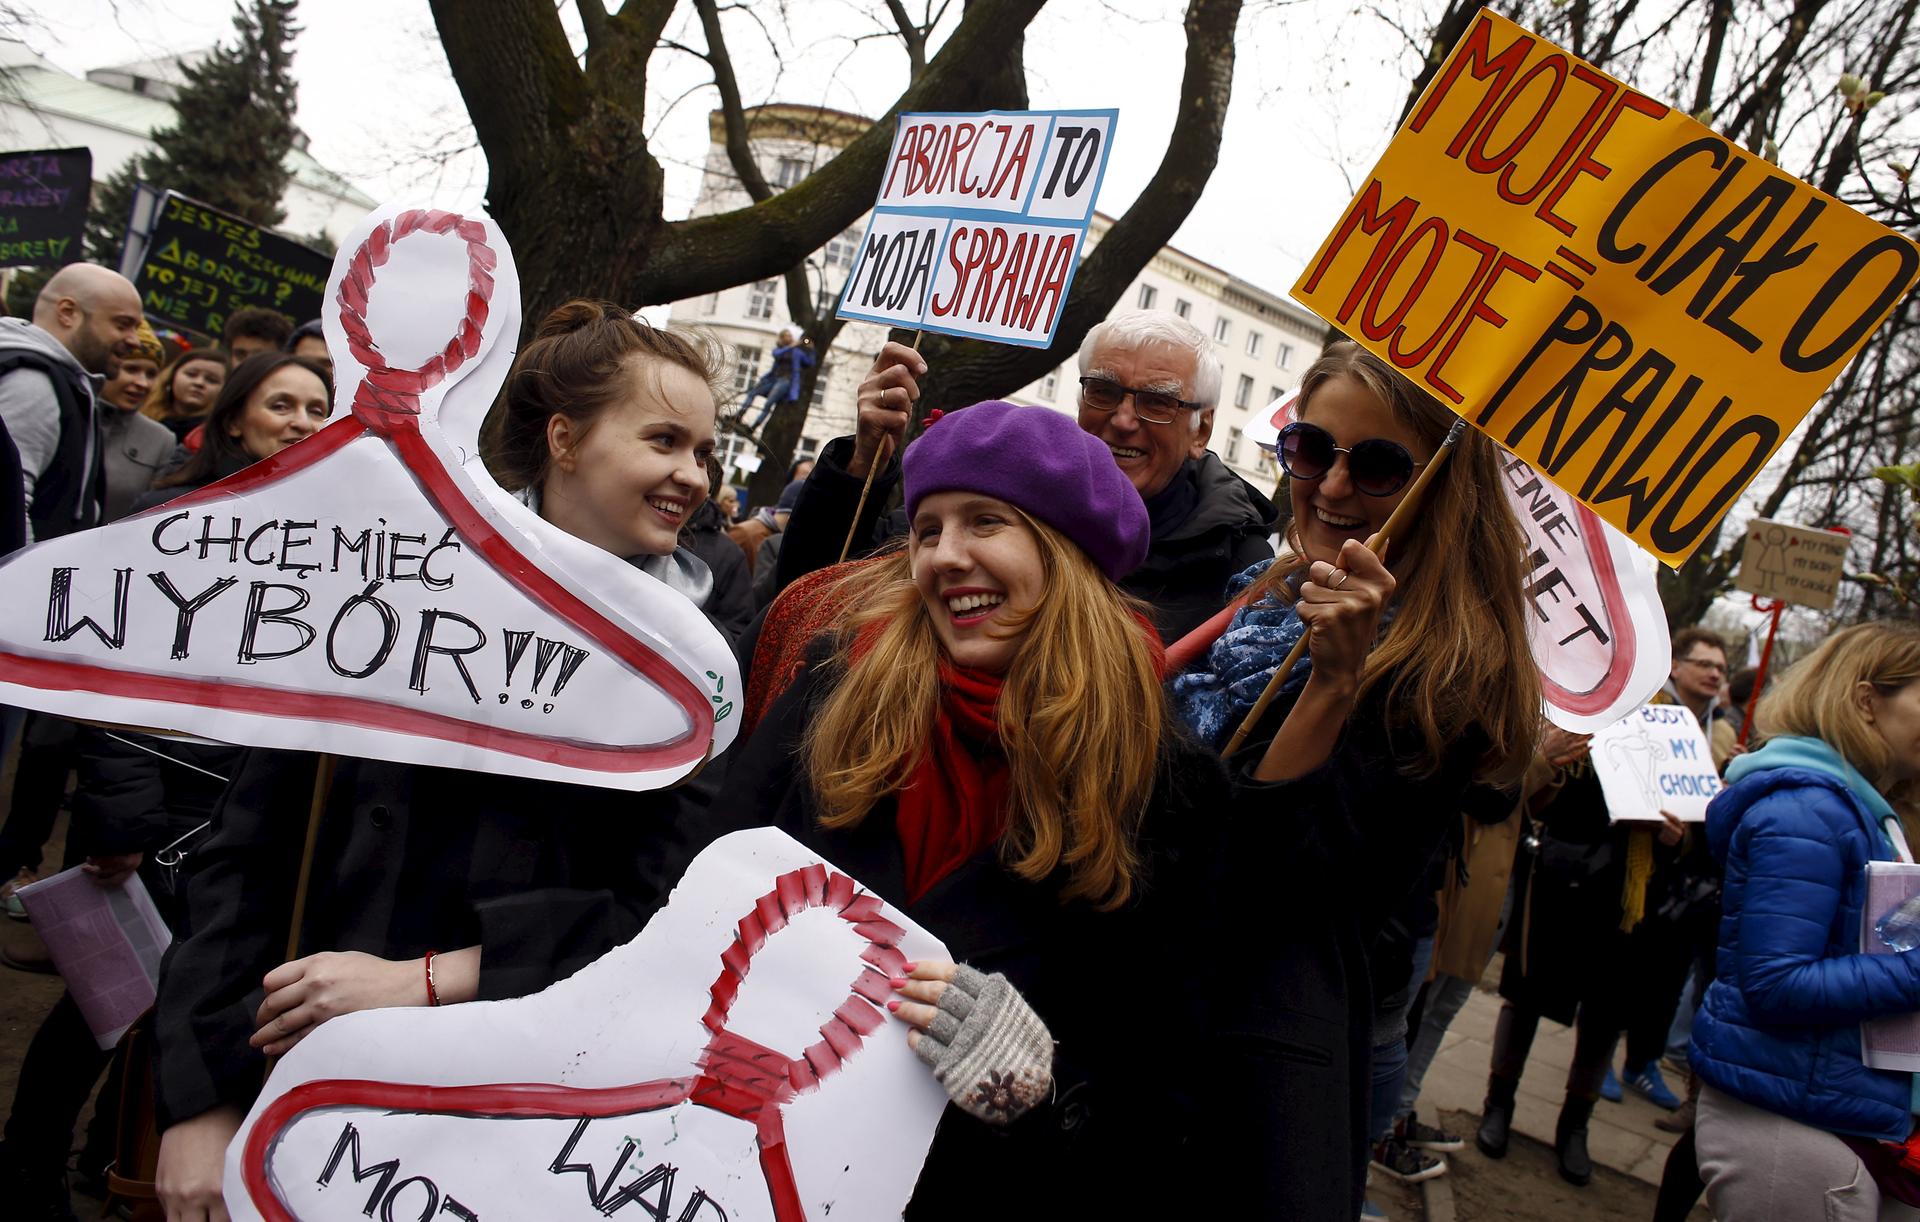 Poland moves toward abortion ban